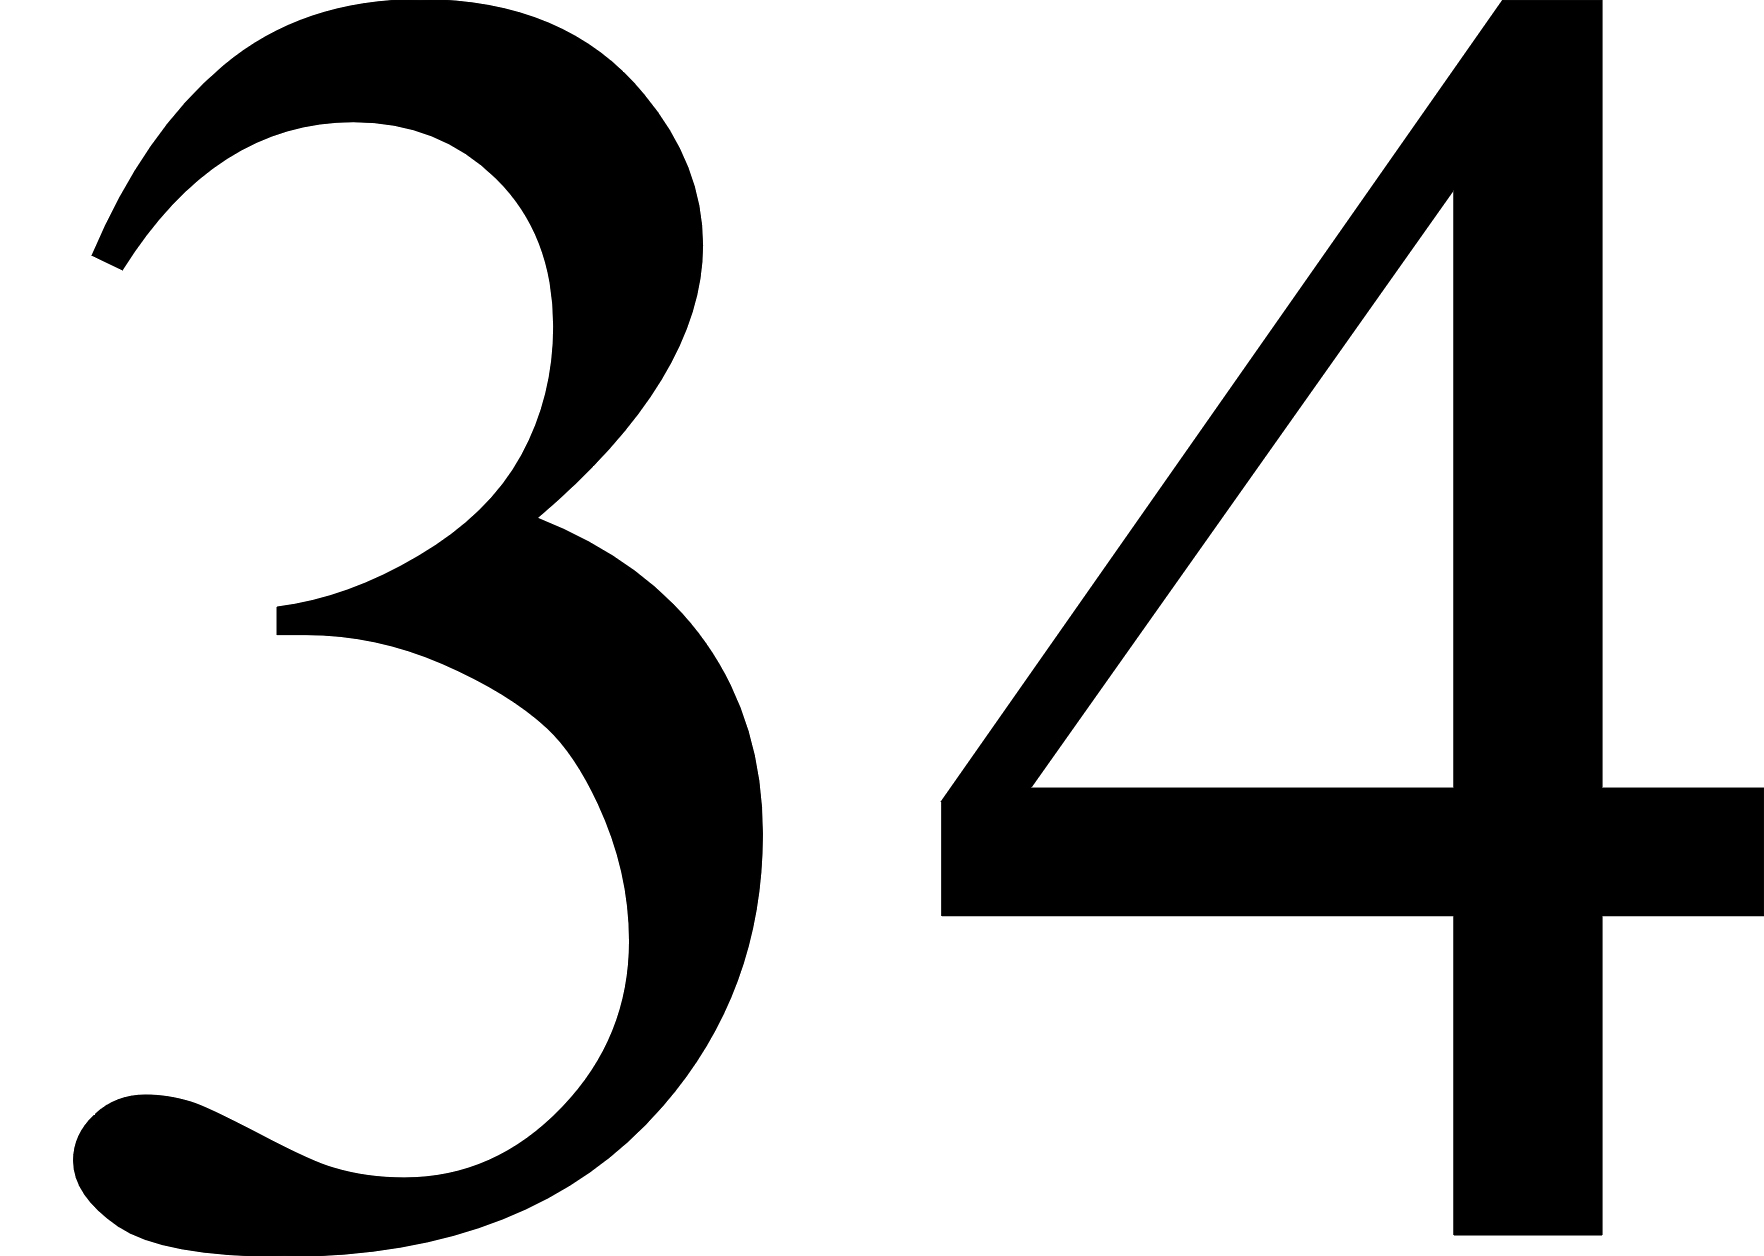 34